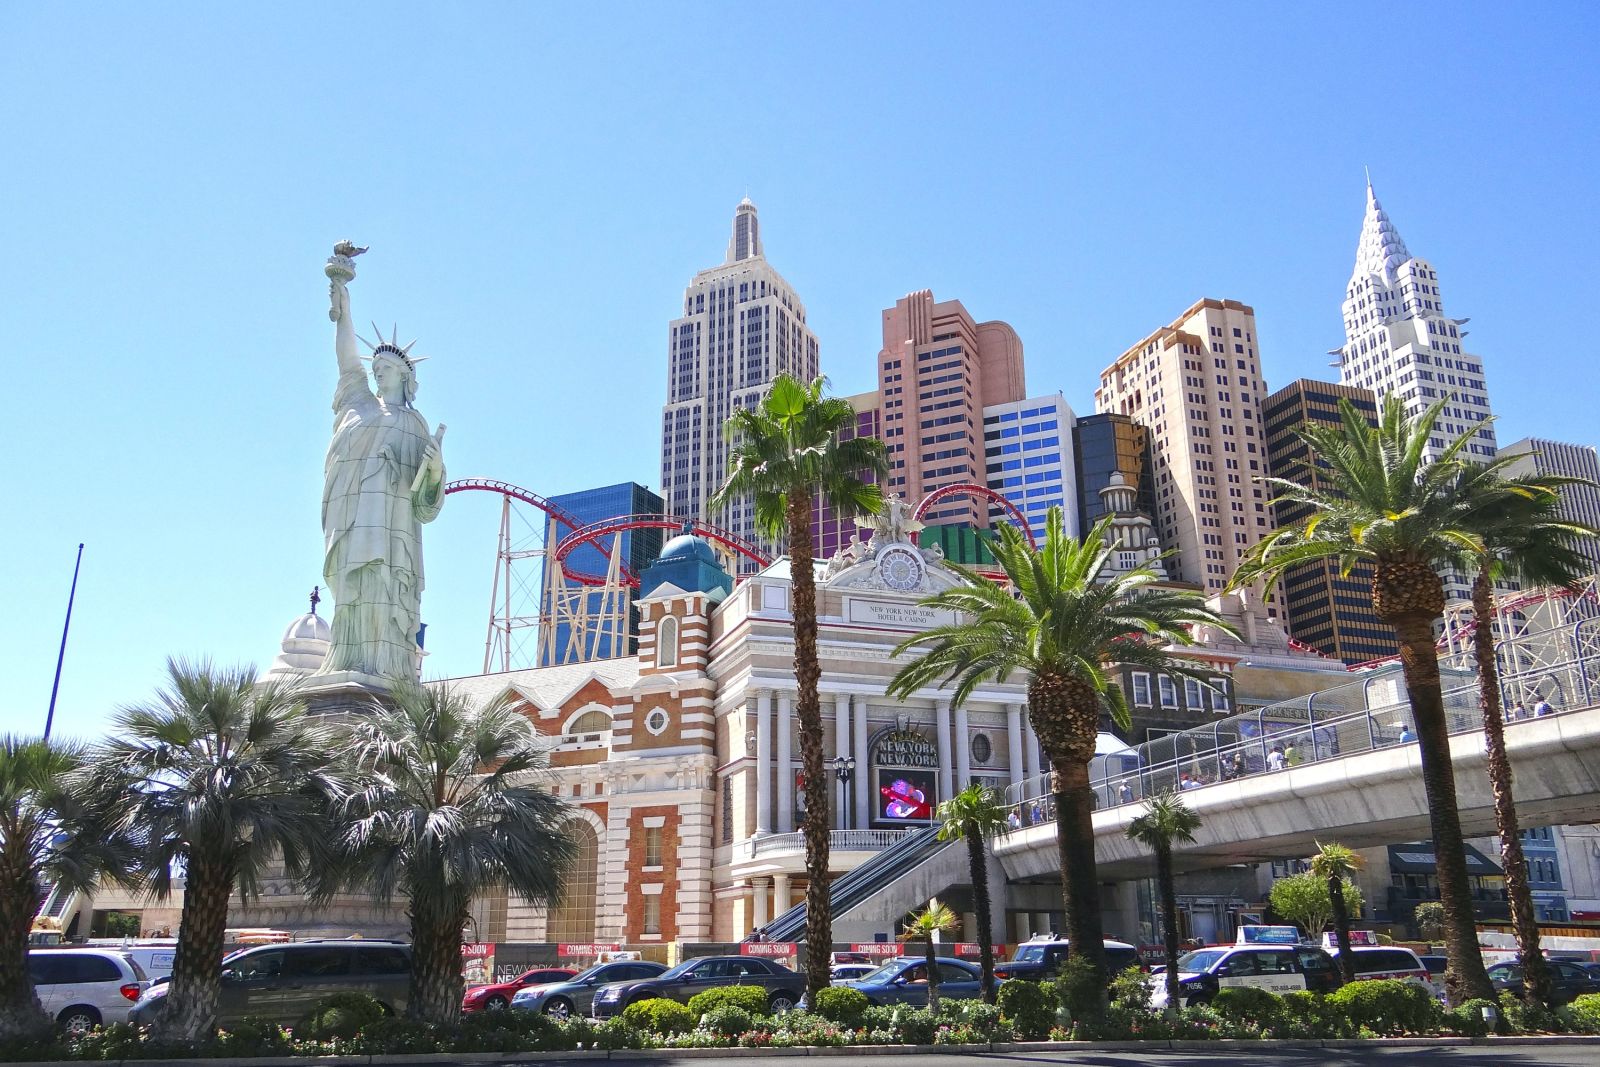 Das New York Hotel in Las Vegas mit hauseigener Achterbahn